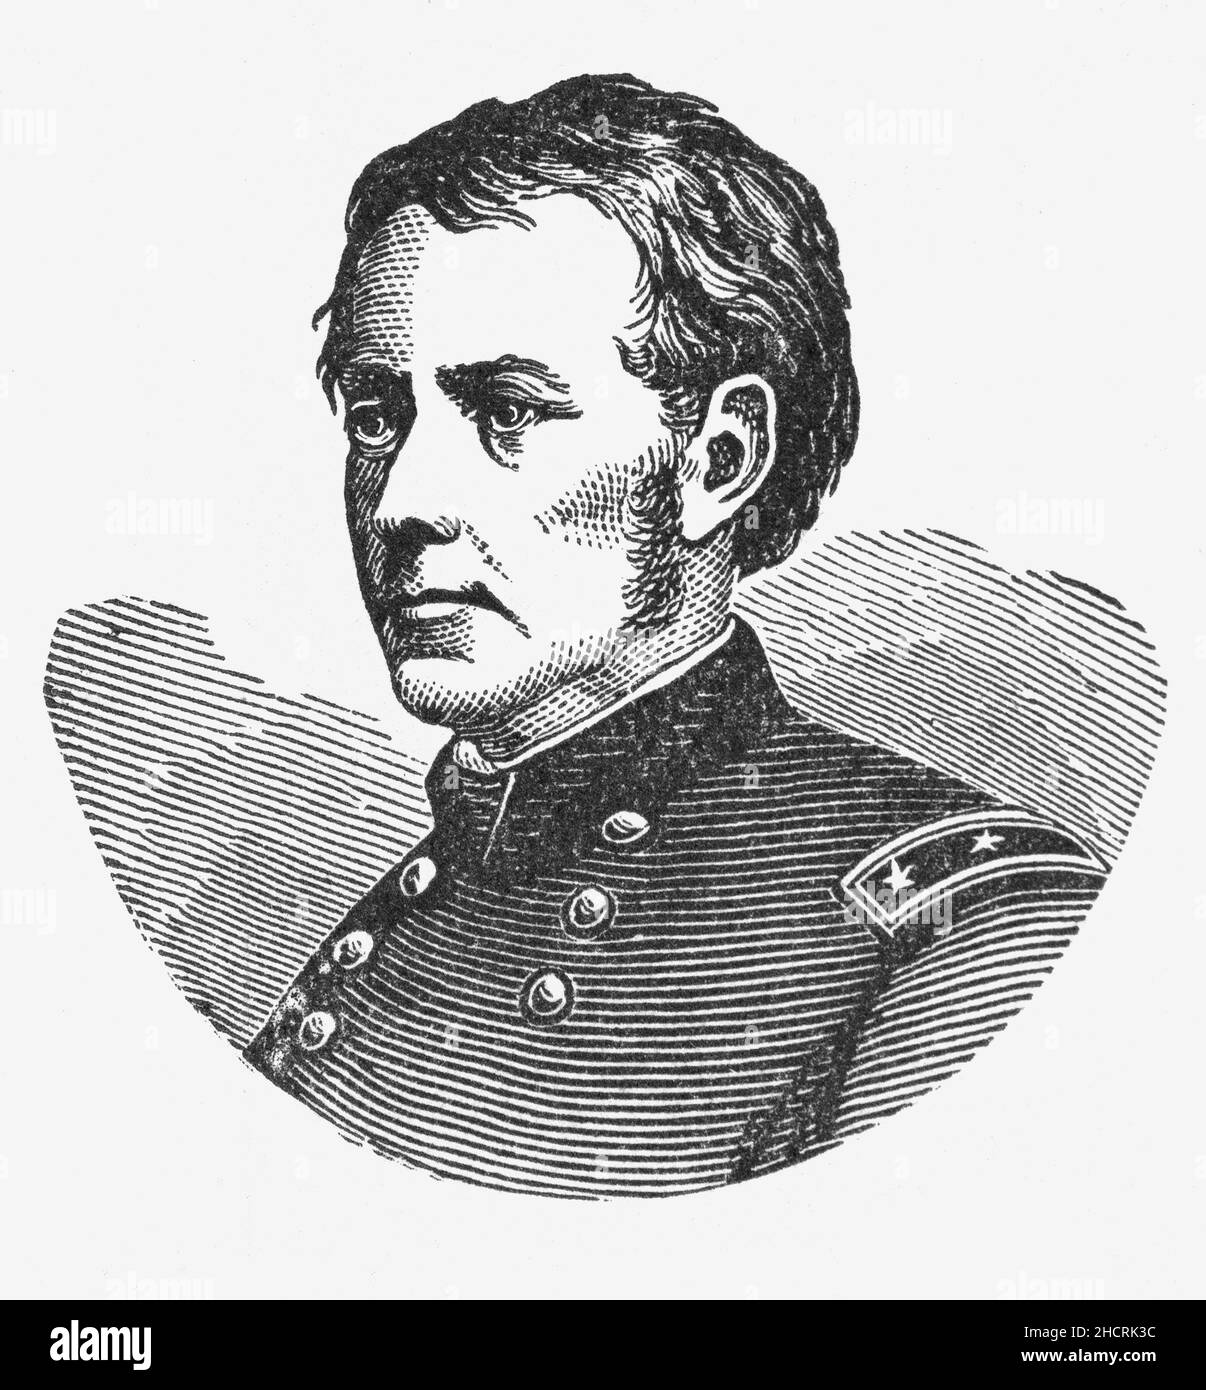 Un 19th portrait de Joseph Hooker (1814-1879) de la fin du siècle était un général américain de la guerre de Sécession pour l'Union.Au début de la guerre civile, il rejoint le côté de l'Union en tant que général de brigade, se distinguant à Williamsburg, Antietam et Fredericksburg, après quoi il a reçu le commandement de l'armée du Potomac.Il est surtout rappelé pour sa défaite décisive par le général confédéré Robert E. Lee à la bataille de Chancellorsville en 1863.Il est devenu connu sous le nom de 'Fighting Joe' à la suite d'une erreur cléricale d'un journaliste, et le surnom est bloqué. Banque D'Images